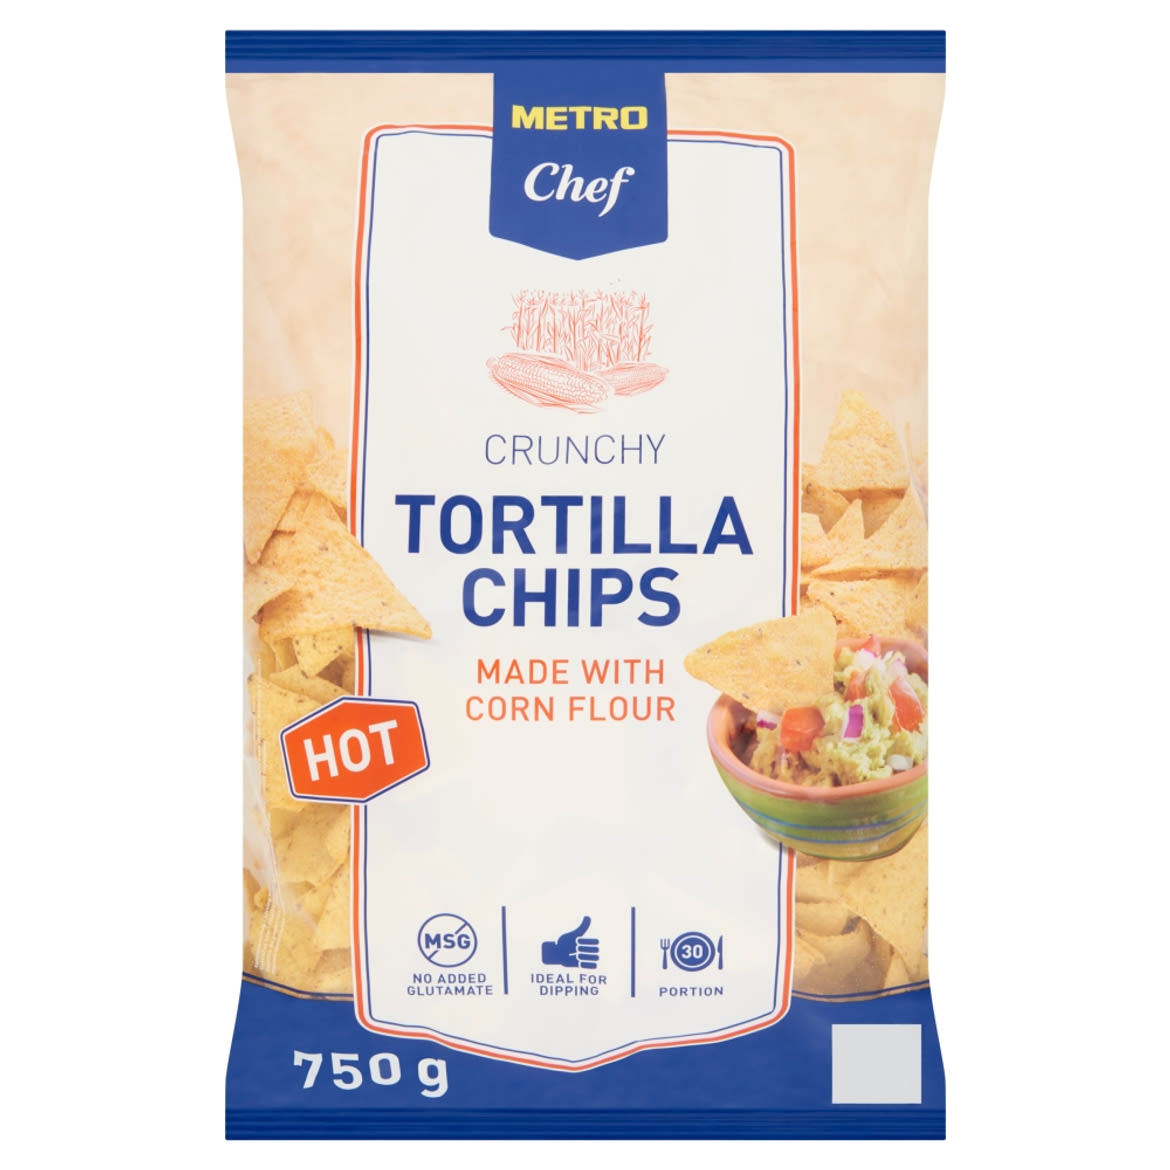 Metro Chef tortilla chips kukoricalisztből csípős és fűszeres ízesítéssel